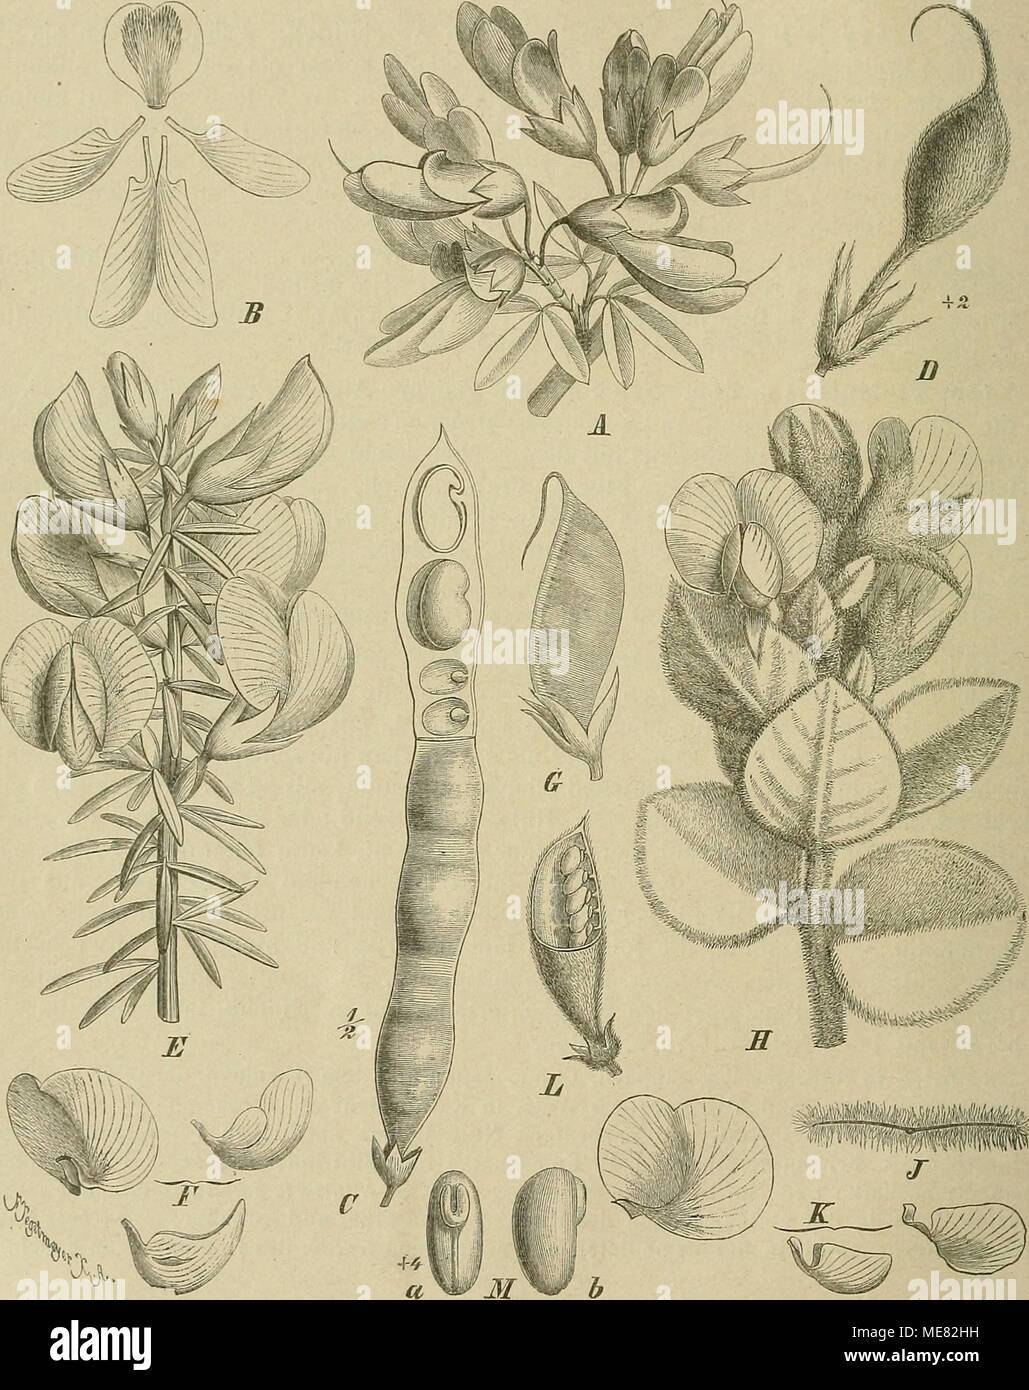 . Die Natürlichen Pflanzenfamilien : nebst ihren Gattungen und wichtigeren Arten, insbesondere den Nutzpflanzen . Fig. 104. A—C Anagyris foetida L. A Blütenzweig; B ßlb.; Ü Hülse, oben lialb oifen, um die S., von denen einer im Längsschnitt, zu zeigen. — D Hülse von Baptisia Lecontii Torr, et Gray. — E—0 Cyclopia genistoides DC. E Blütenzweig; F Blb.; G Hülse. — H—K Podalyria cordata E. Br. IT Blütenzweig; J Querscbnitt durcli ein B., um dessen Dicke zu zeigen; TT Blb. — L, M Podalyria cnneijolia Vent. L Hülse, halb geöffnet; M S., a von der Bauchseite, 6 von der Seite. (Original; soweit nicht Stock Photo